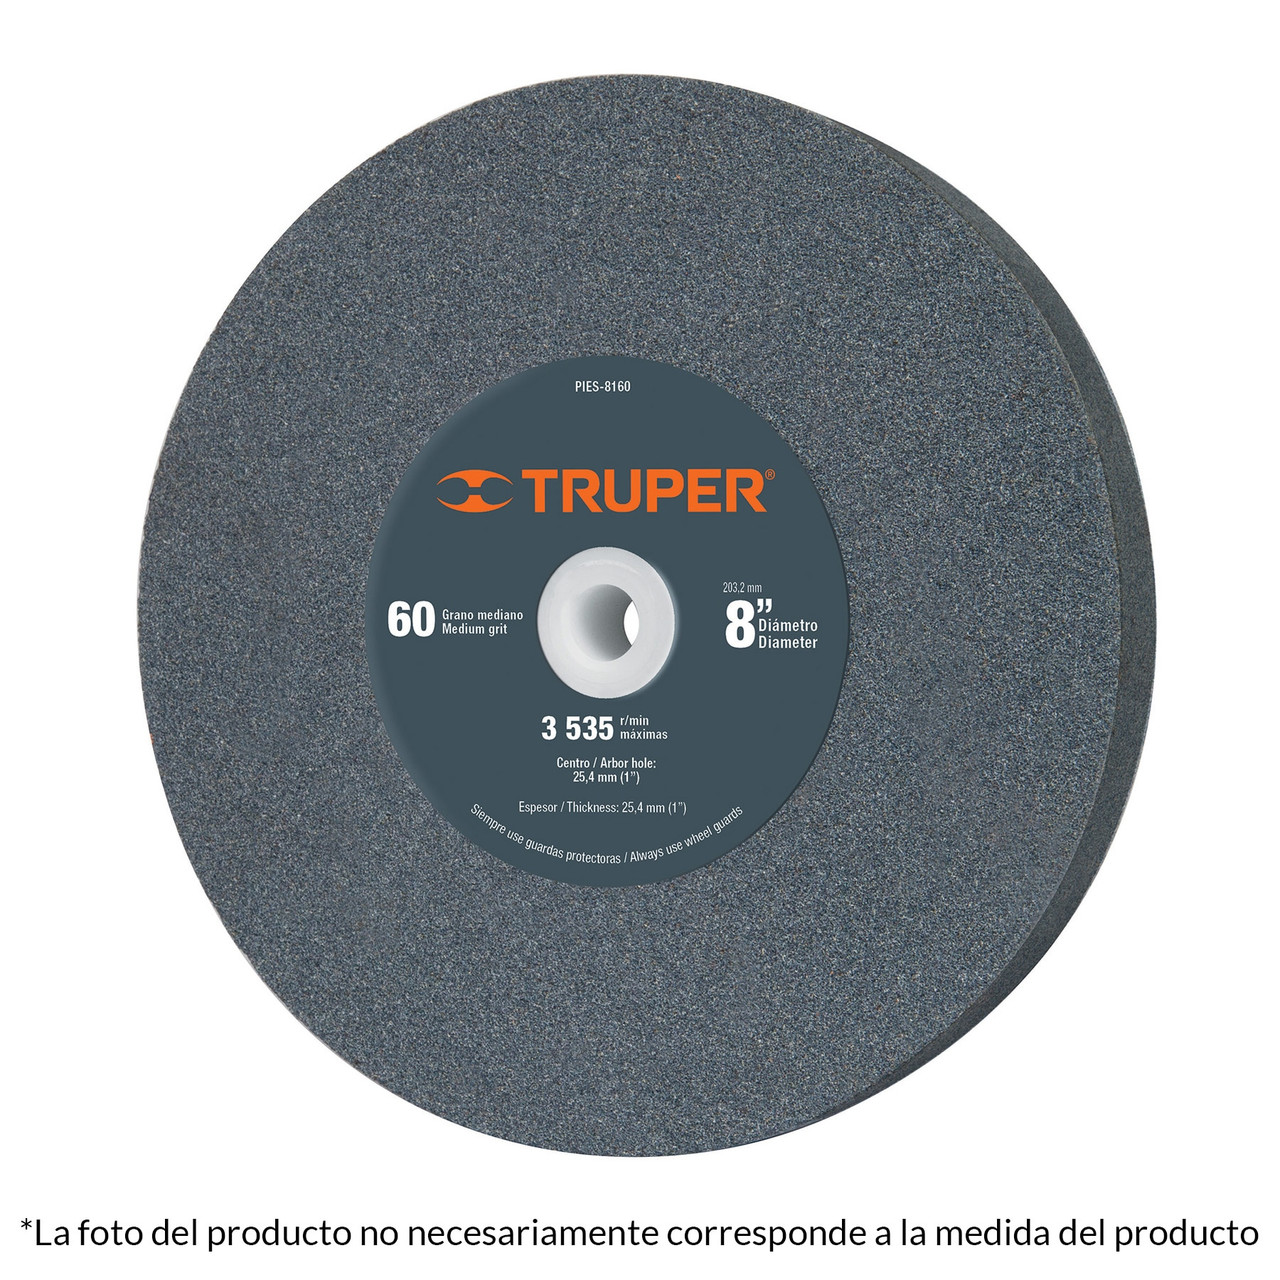 Truper 10 x 1-1/4" Grain 36 Aluminum Oxide Bench Grinding Wheels #12401